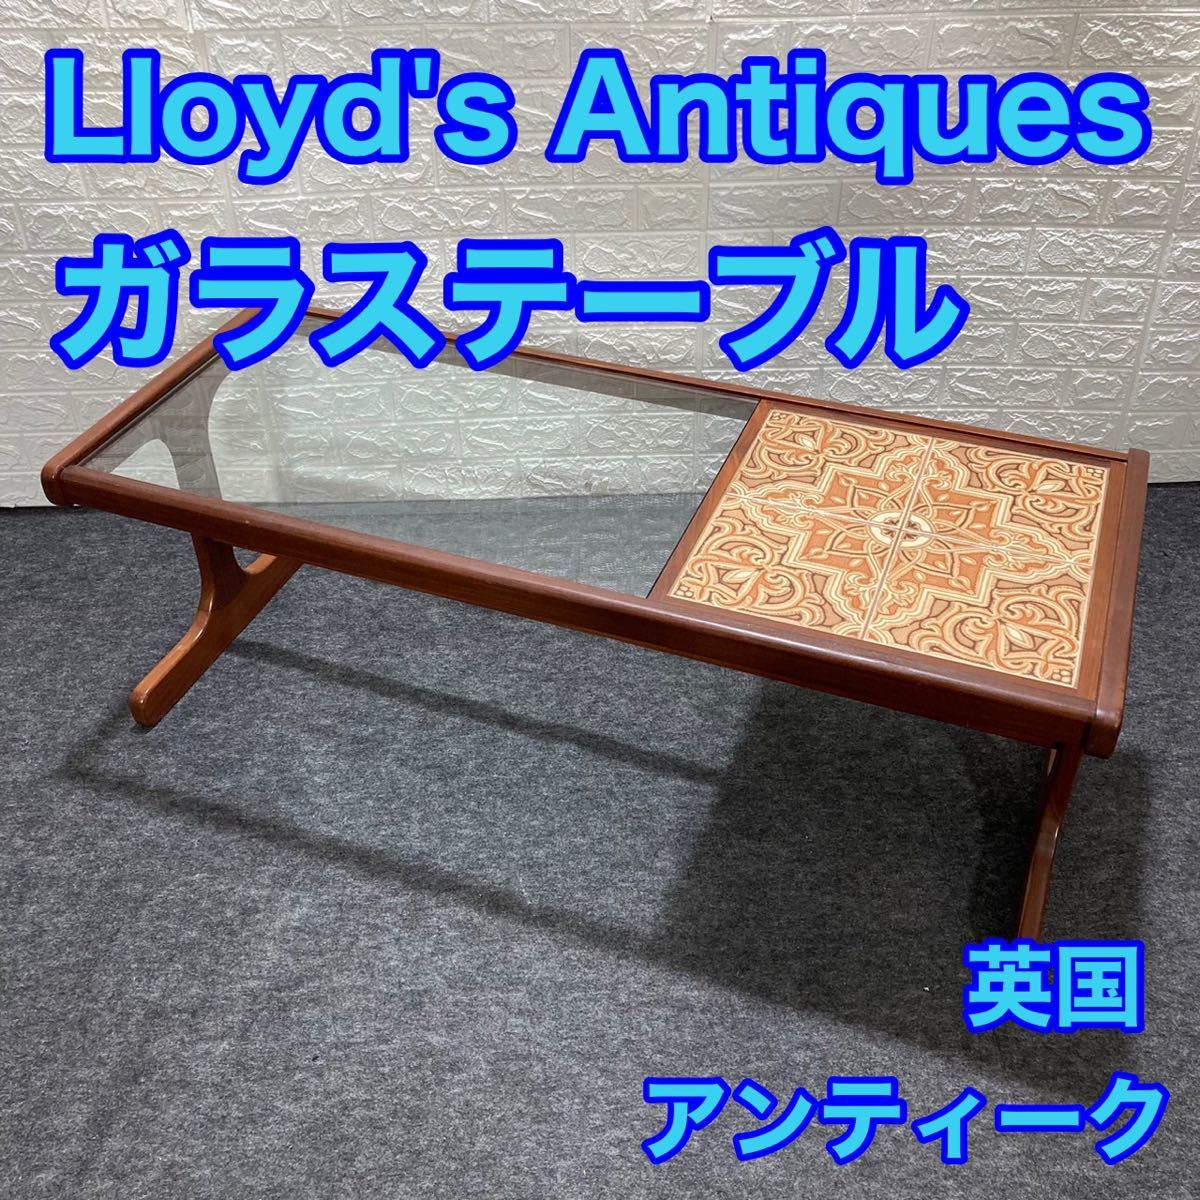 Lloyd's Antiques ロイズ・アンティークス ガラステーブル イギリス 英国 アンティーク d1047